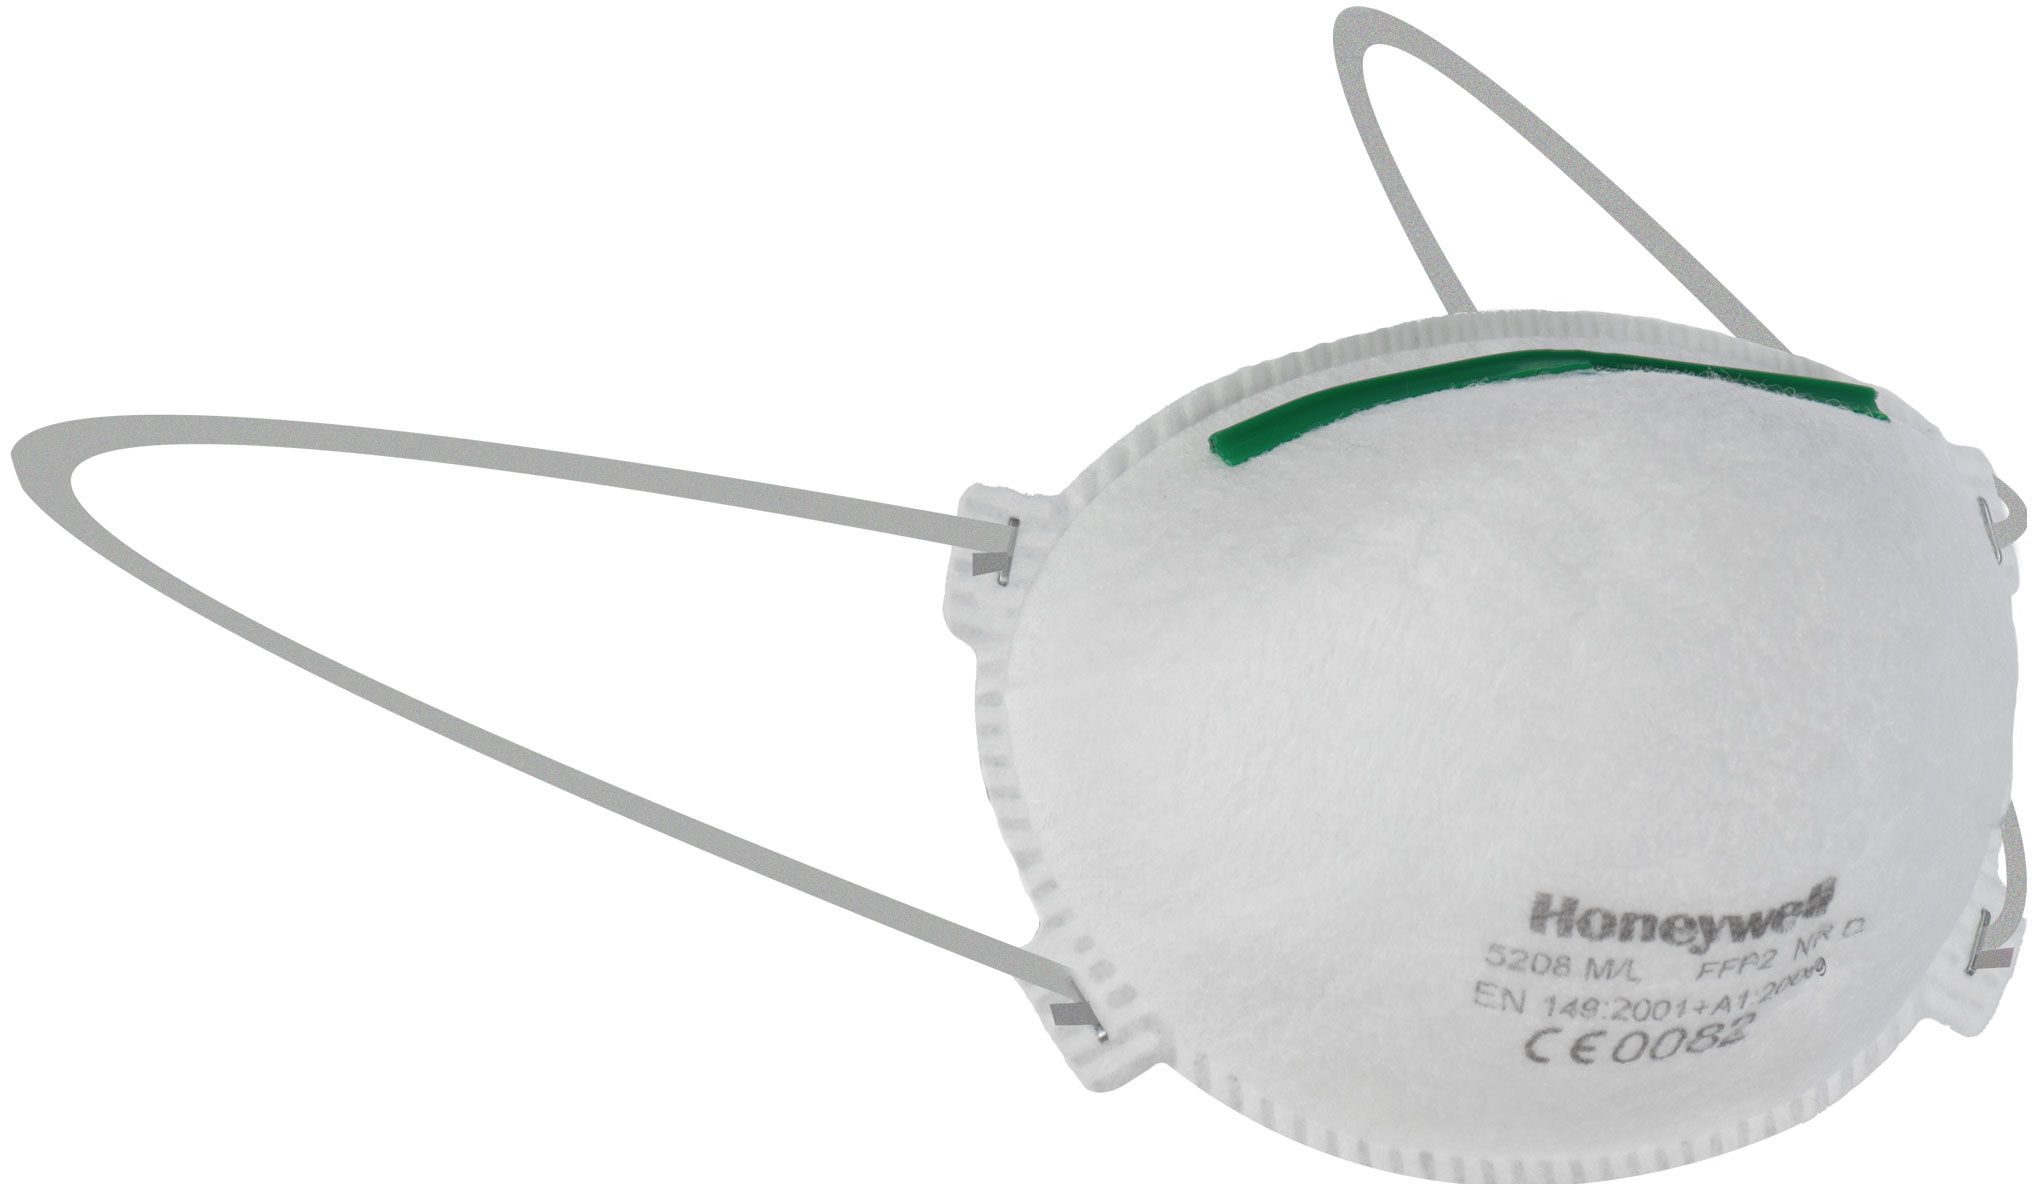 ABVERKAUF: 20x Honeywell 5208 Staubmaske - EN 149 FFP2 - Maske gegen Holz- & Metallstaub